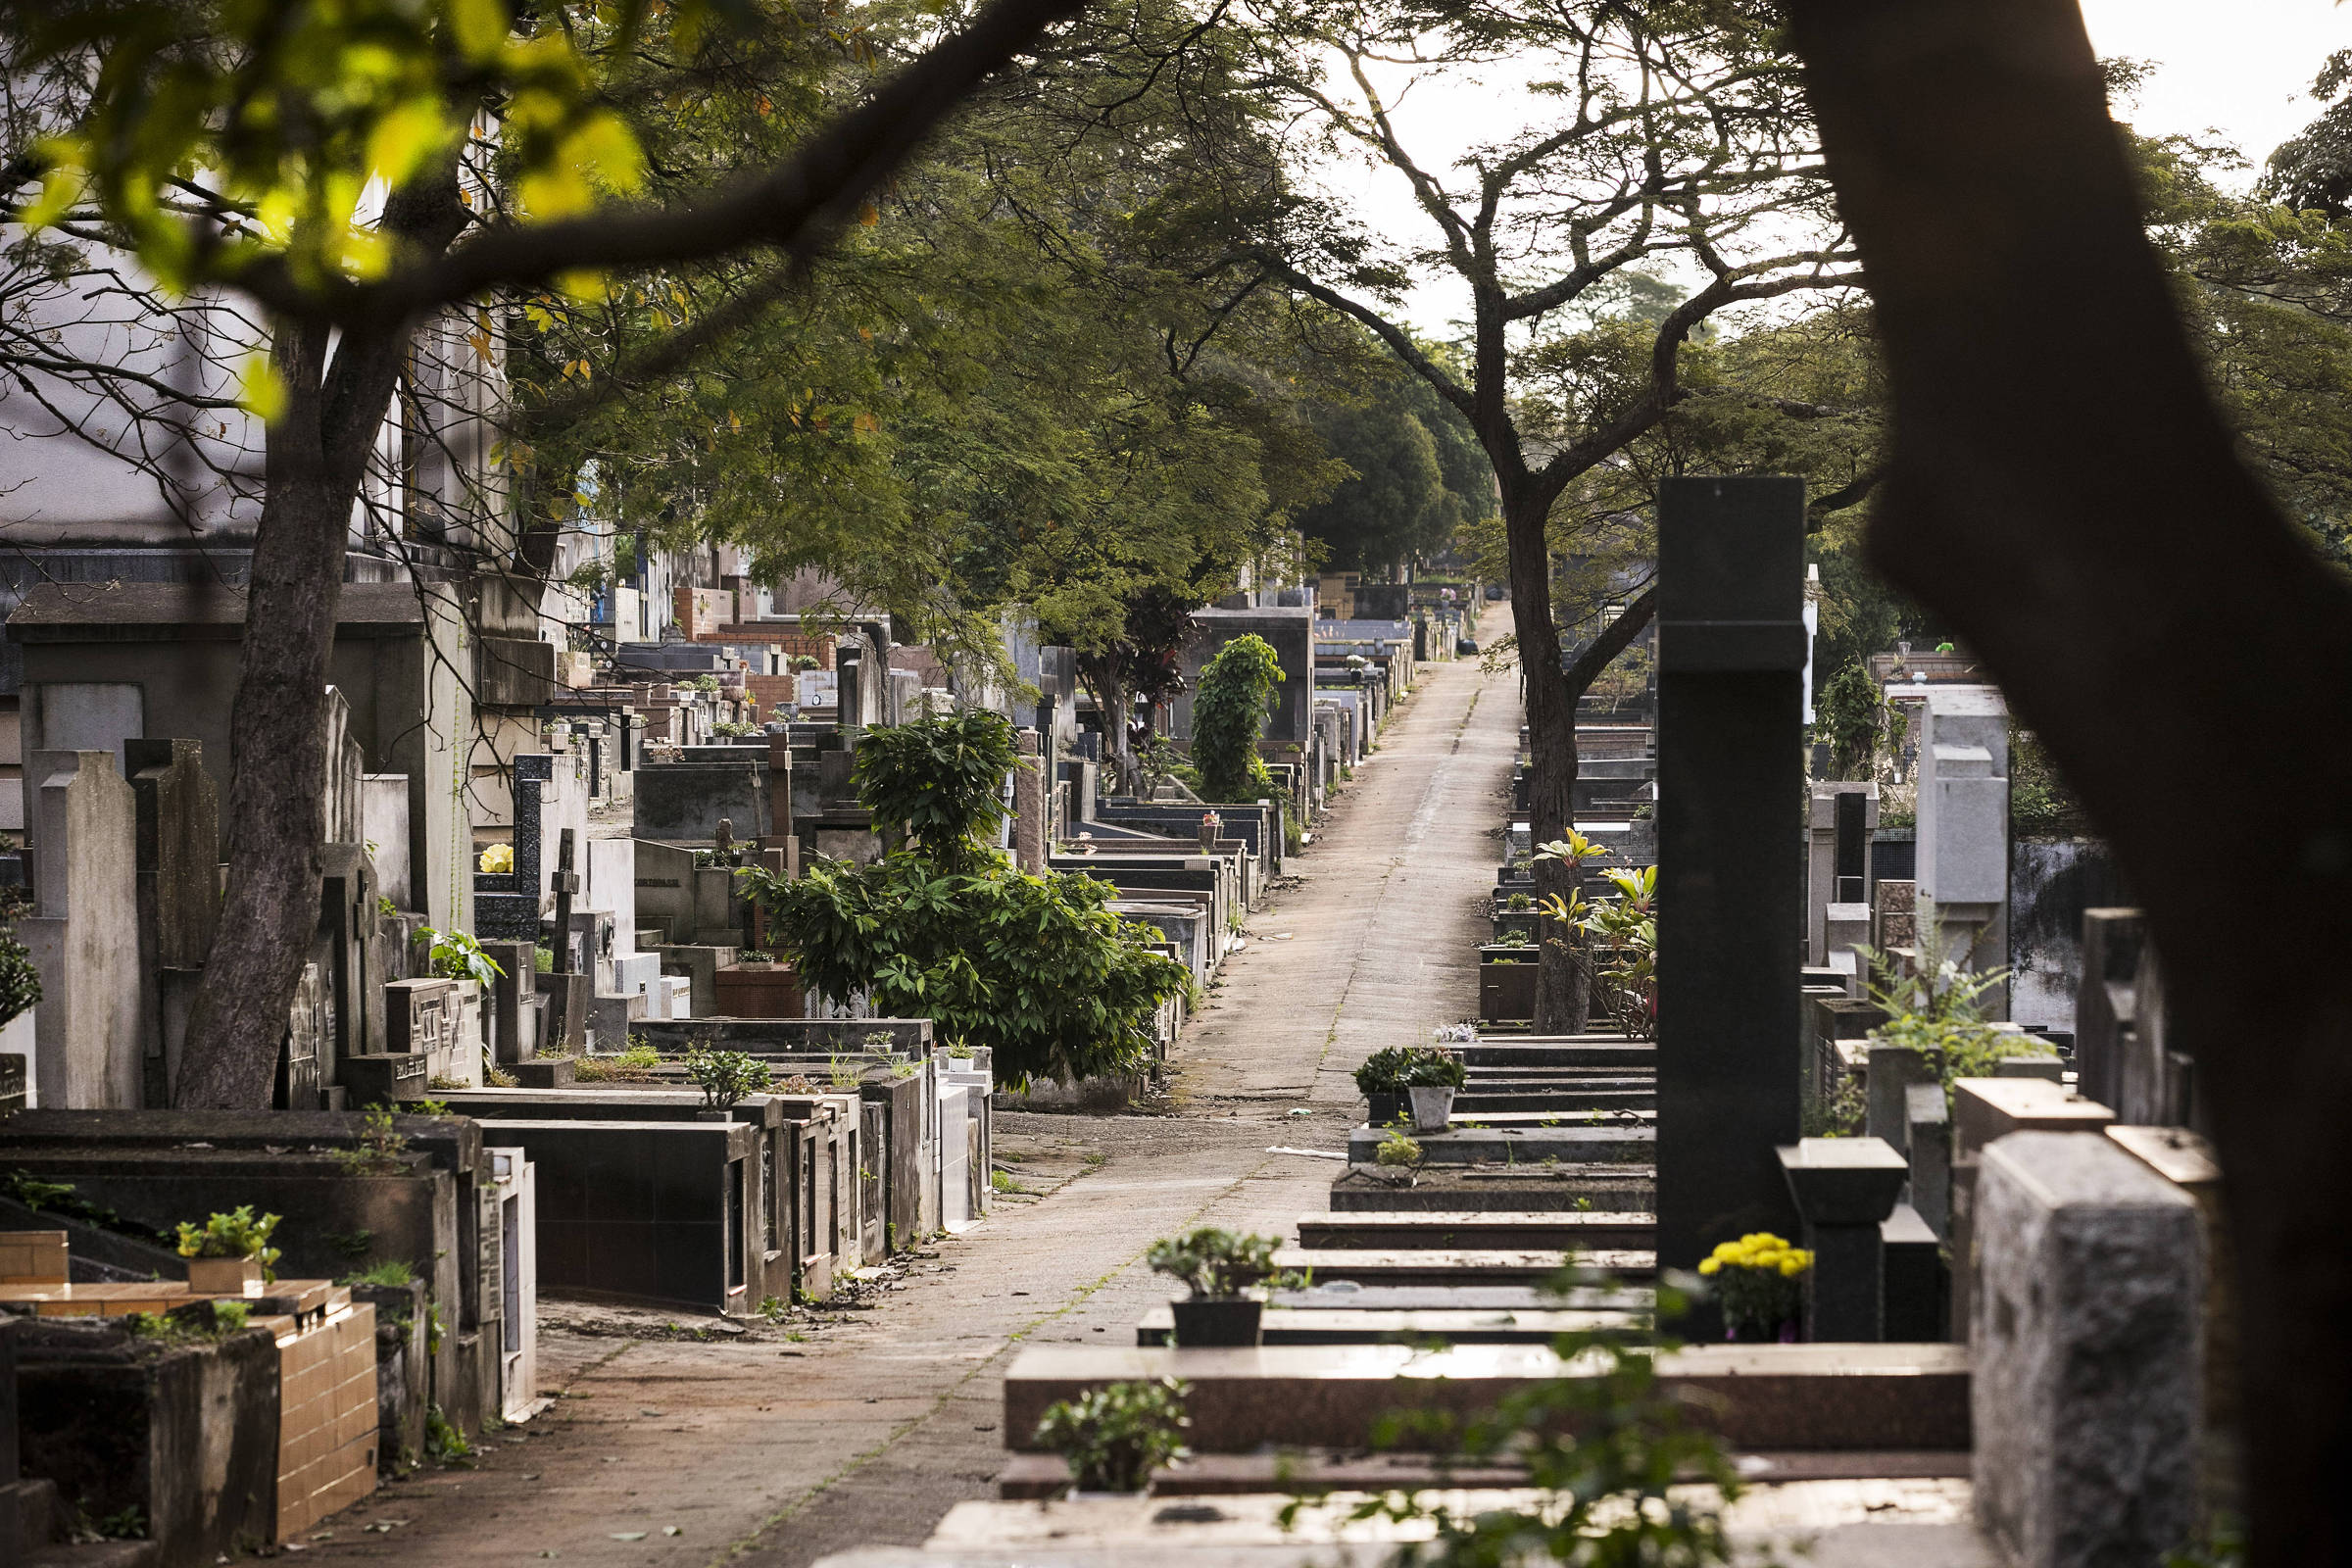 Concessão De Cemitérios Em Sp Inclui Criação De Memoriais Para Vítimas 